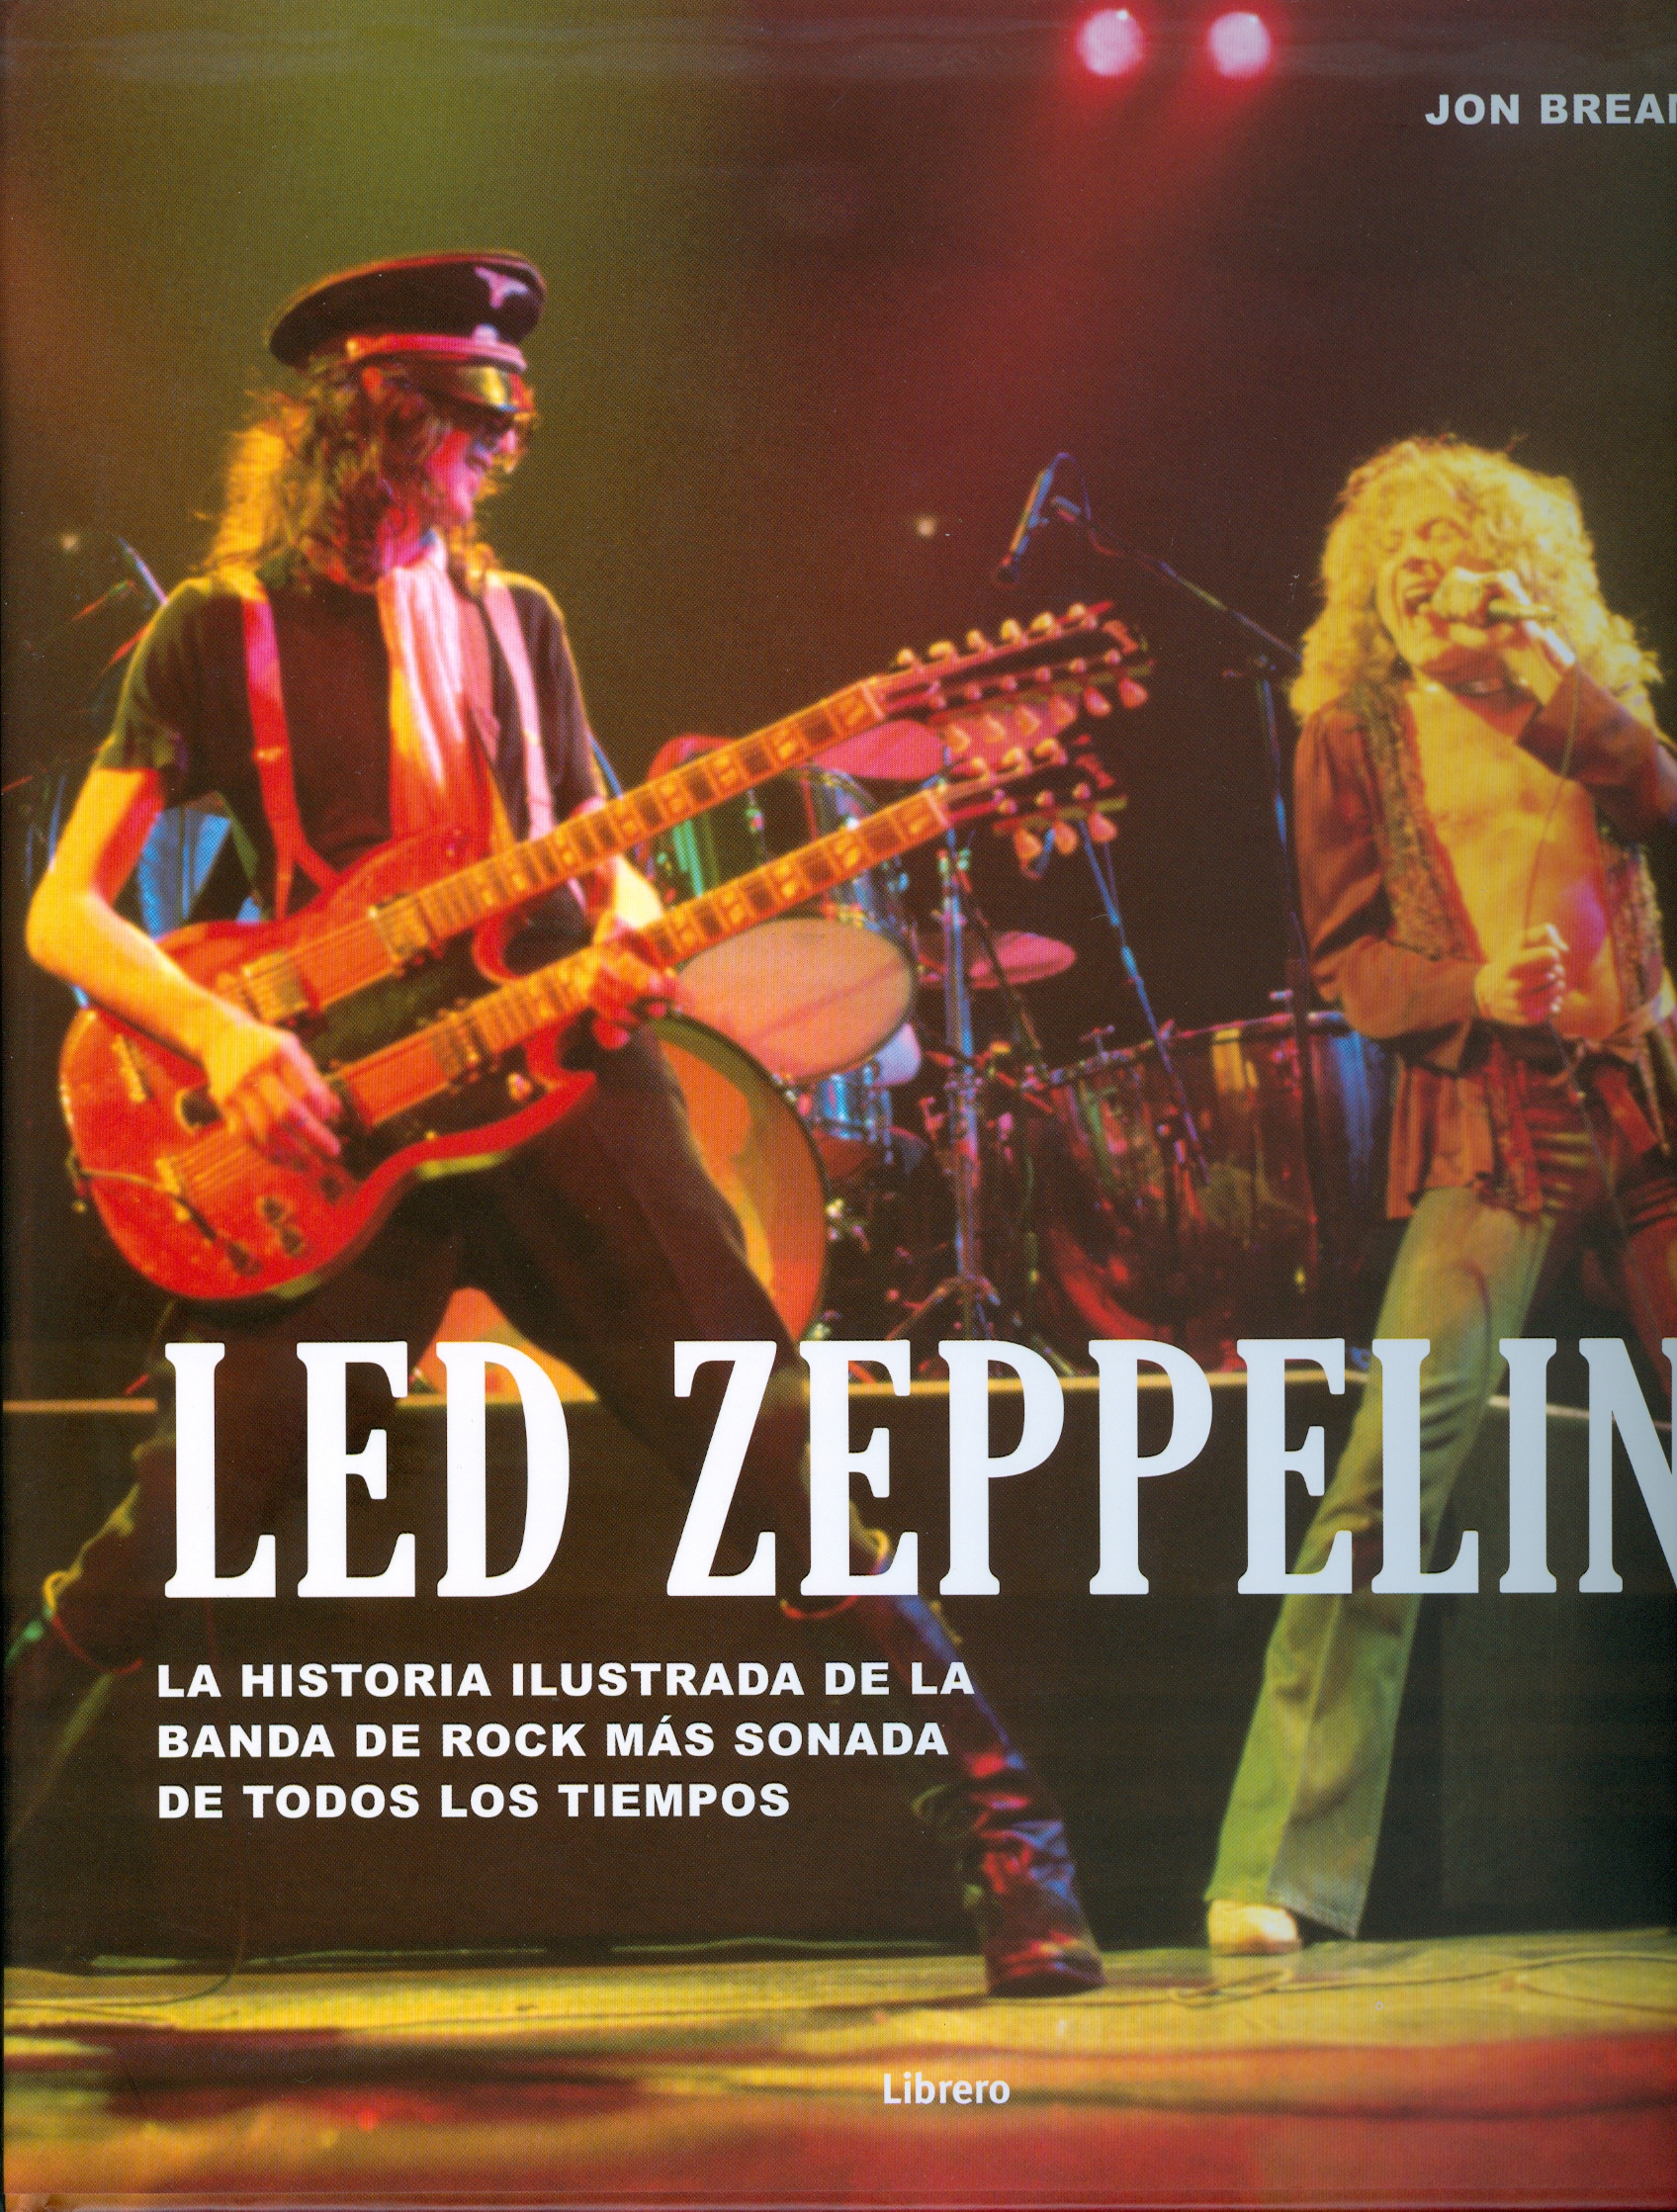 
            Led Zeppelin